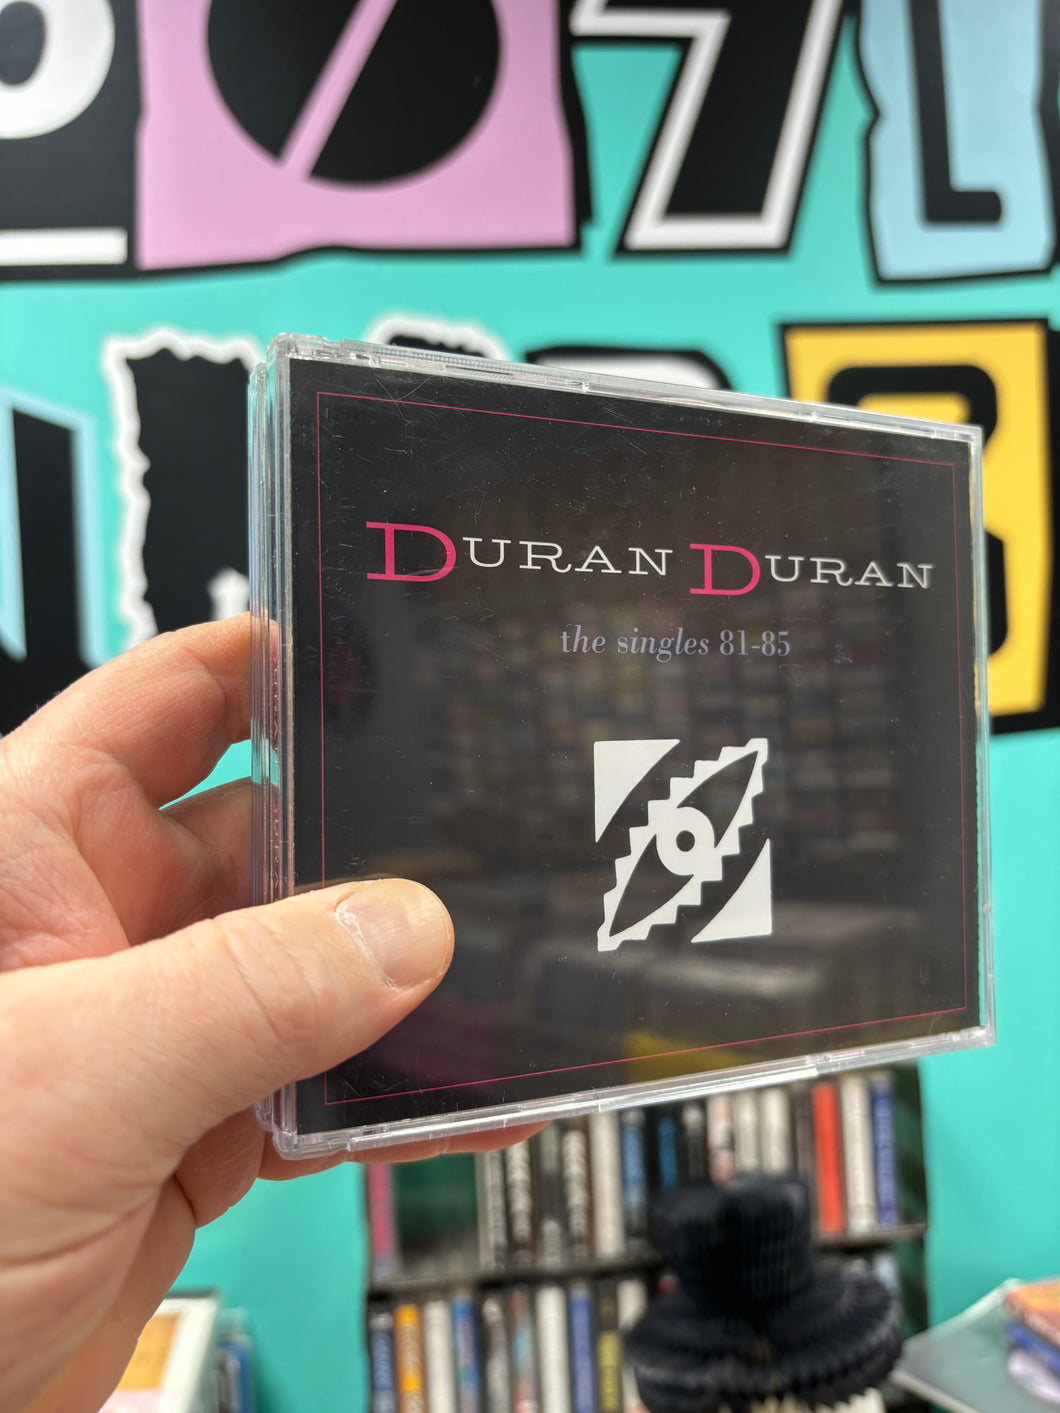 Duran Duran: The Singles 81-85, 3CD, reissue, Europe 2009